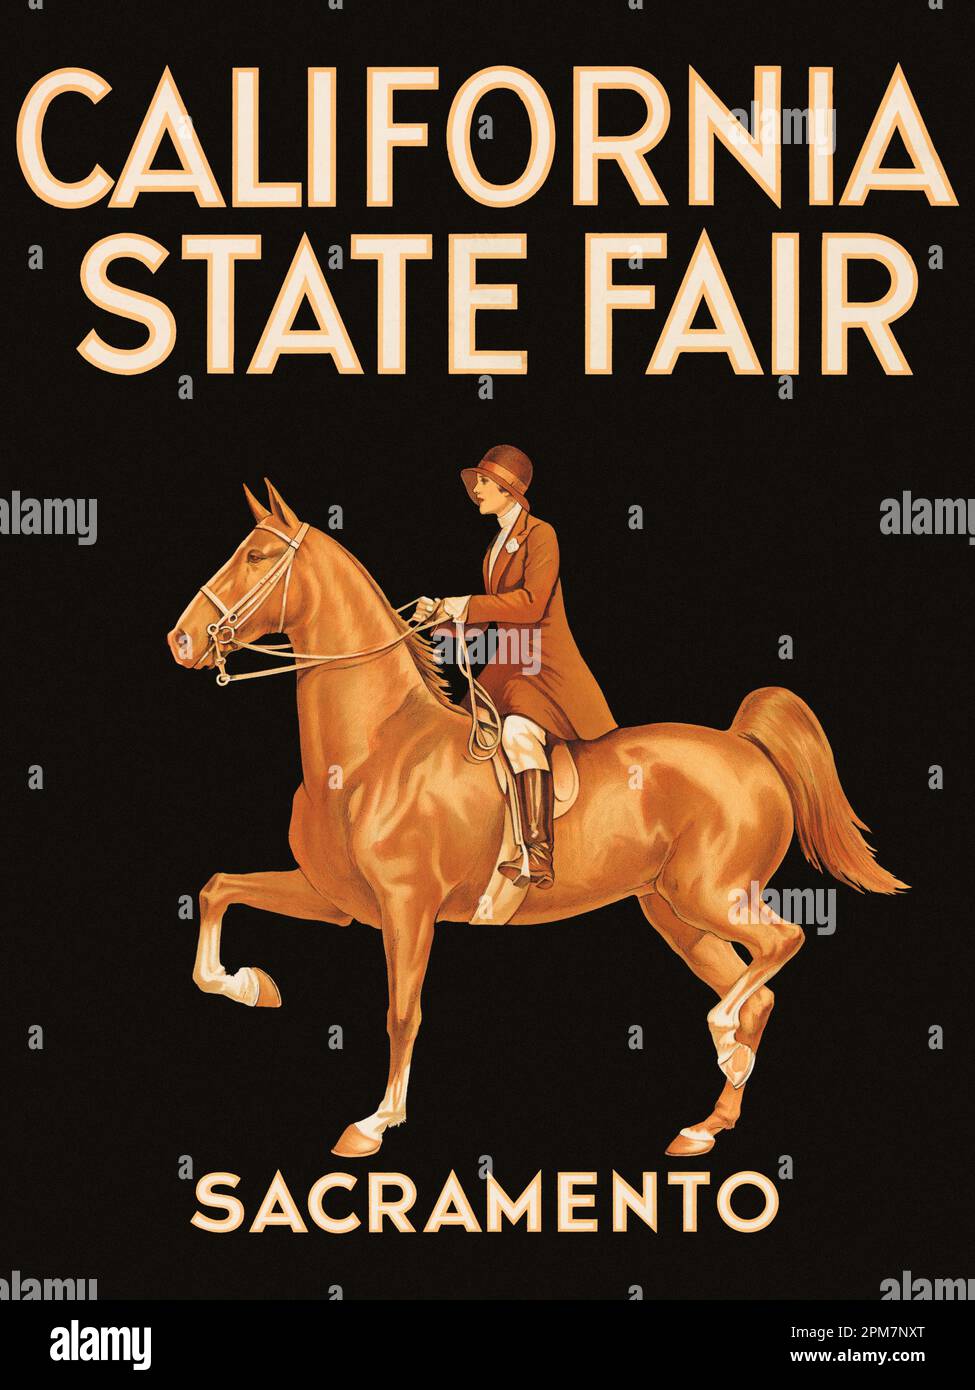 California State Fair. Sacramento. Künstler unbekannt. Poster wurde 1933 in den USA veröffentlicht. Stockfoto